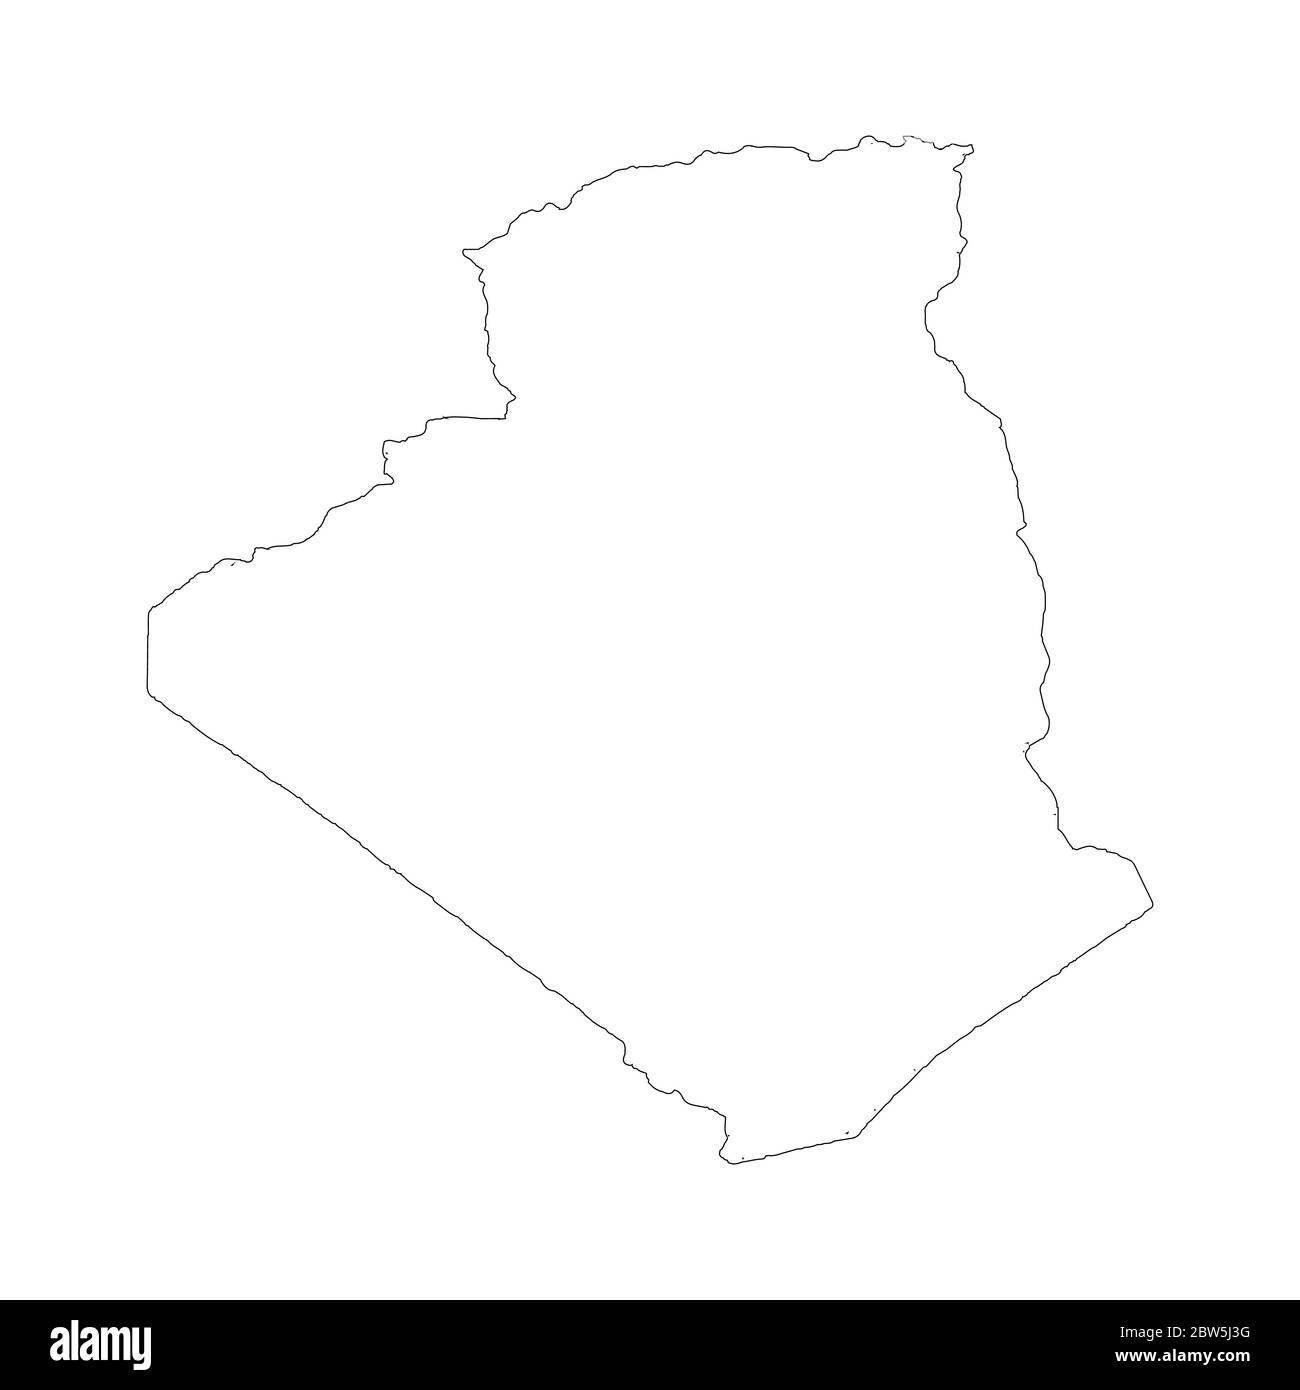 Vektorkarte Algerien. Land und Hauptstadt. Isolierte Vektorgrafik. Übersicht. EPS 10-Abbildung. Stock Vektor